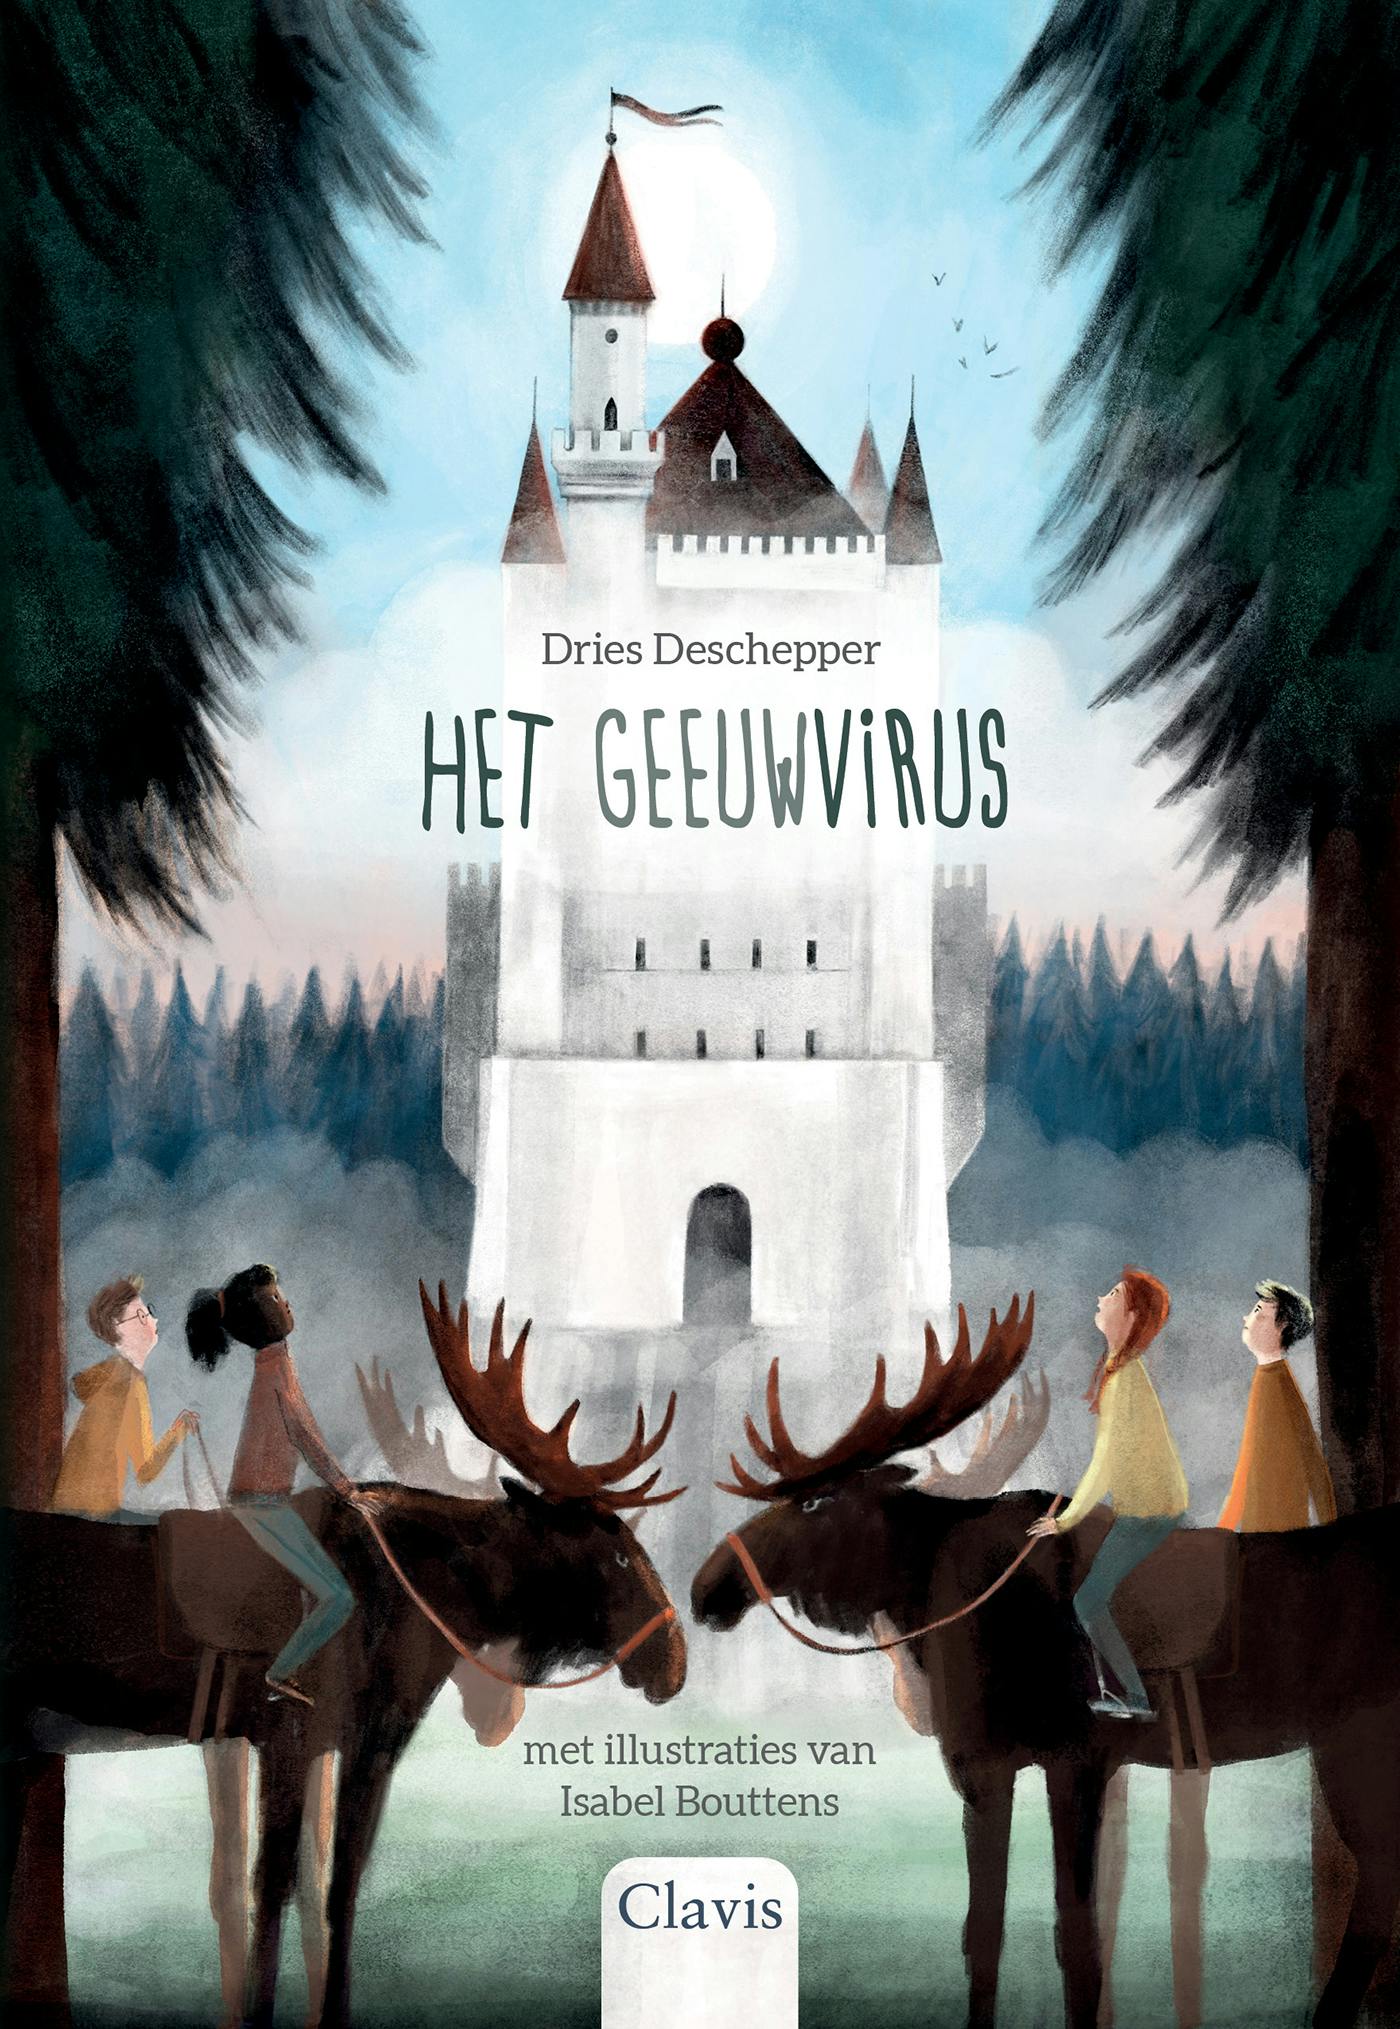 ISBN 9789044849080
Titel Het geeuwvirus
Auteur Dries Deschepper
Illustrator Isabel Bouttens